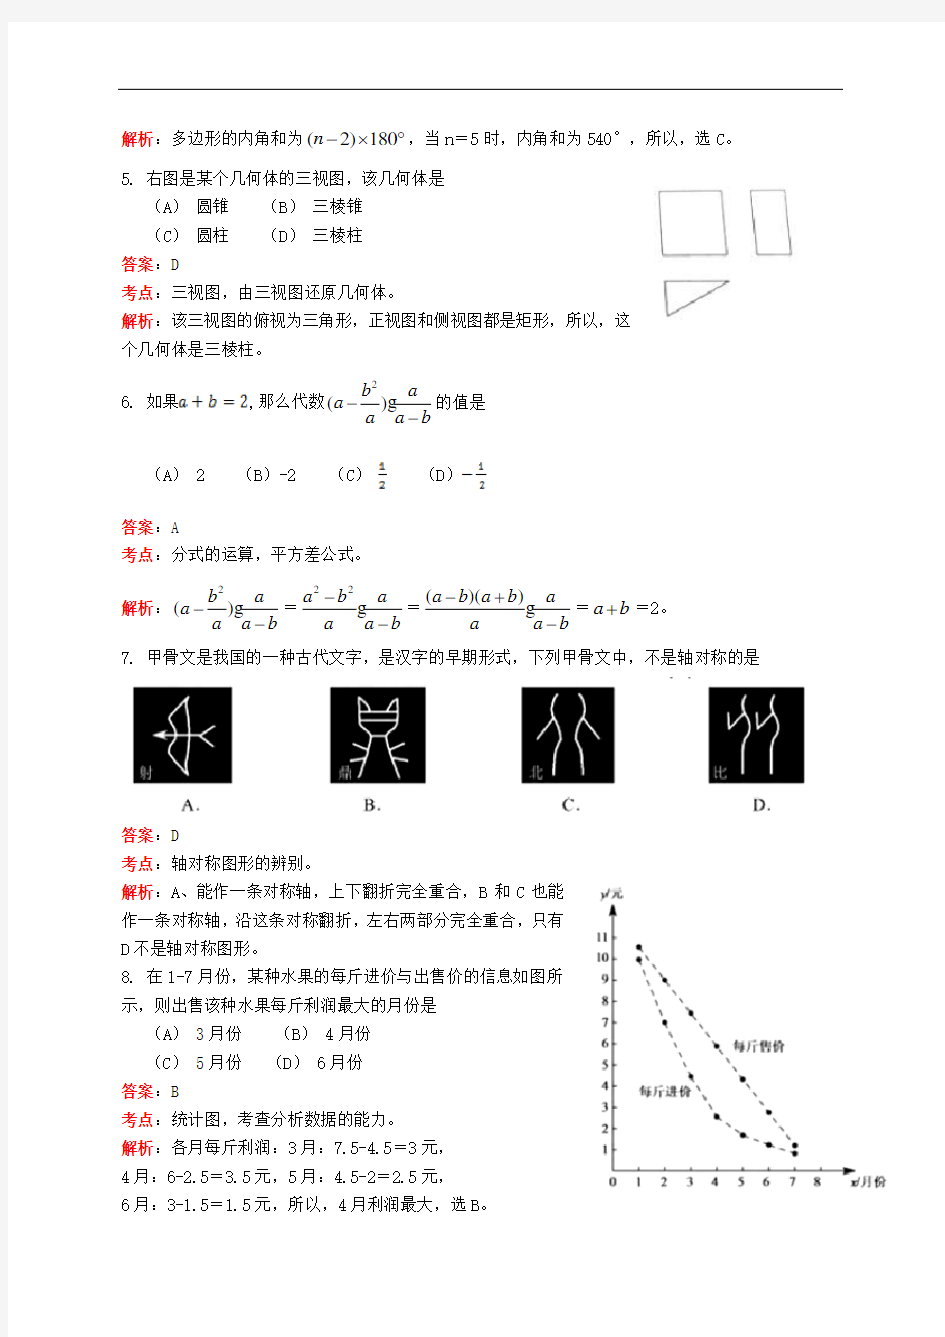 2016年北京中考数学试题(解析版)